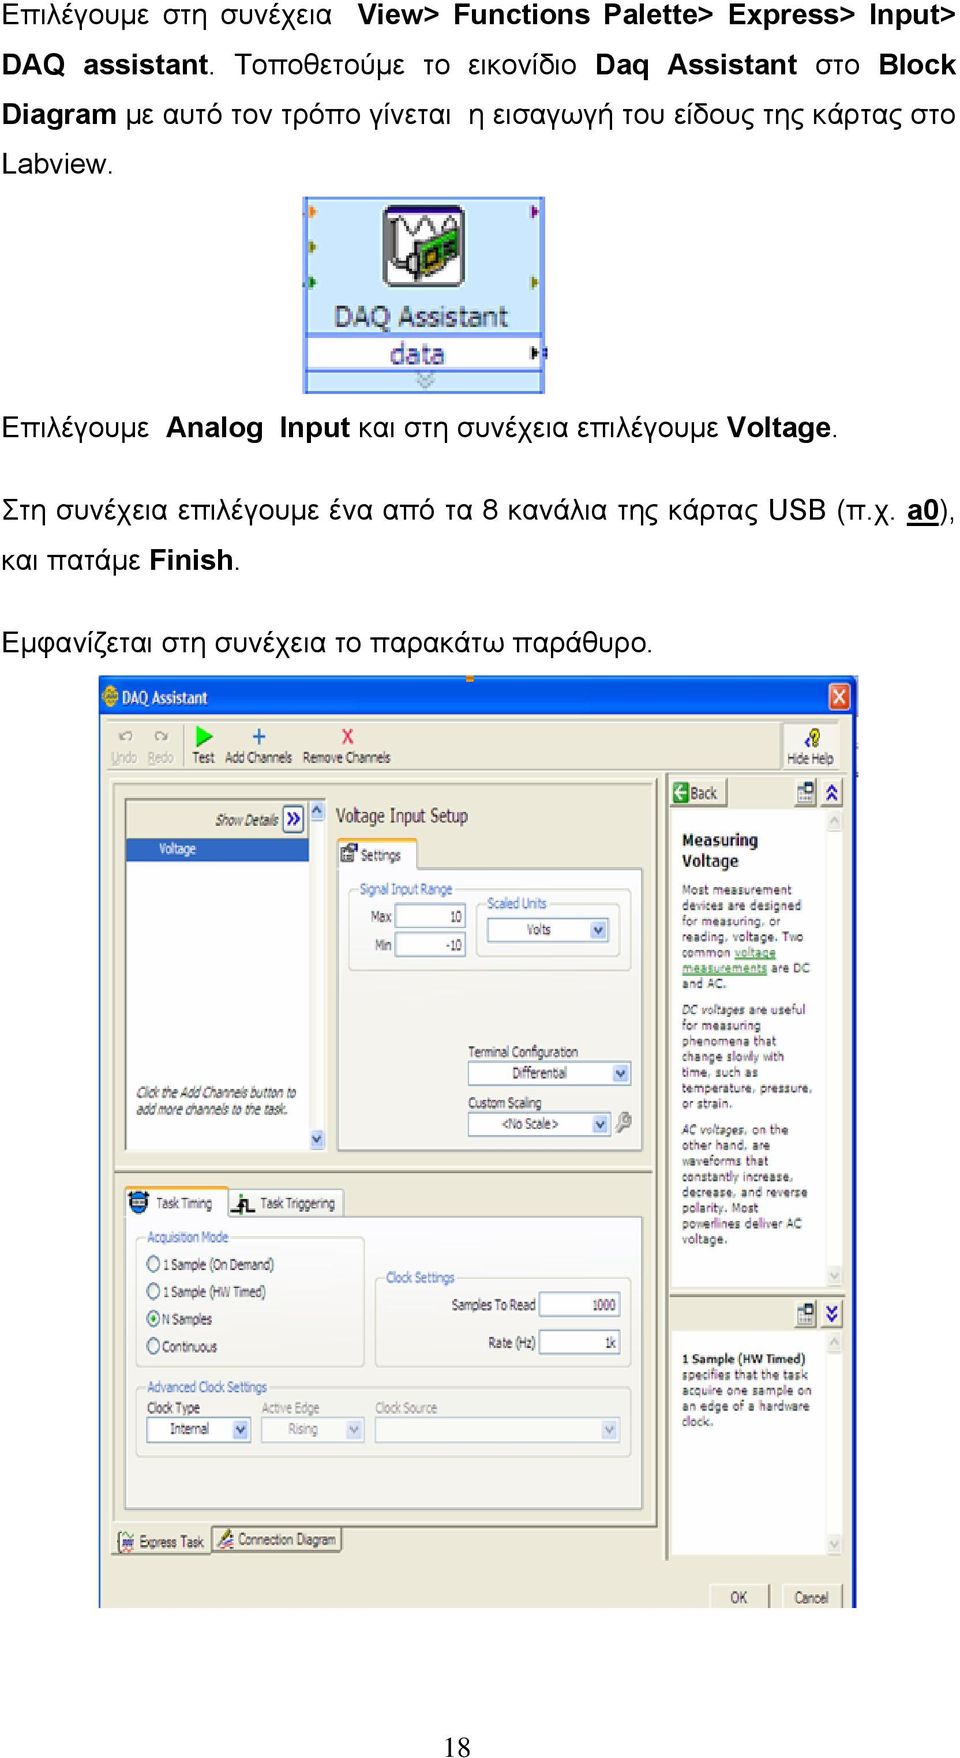 είδους της κάρτας στο Labview. Επιλέγουμε Analog Input και στη συνέχεια επιλέγουμε Voltage.